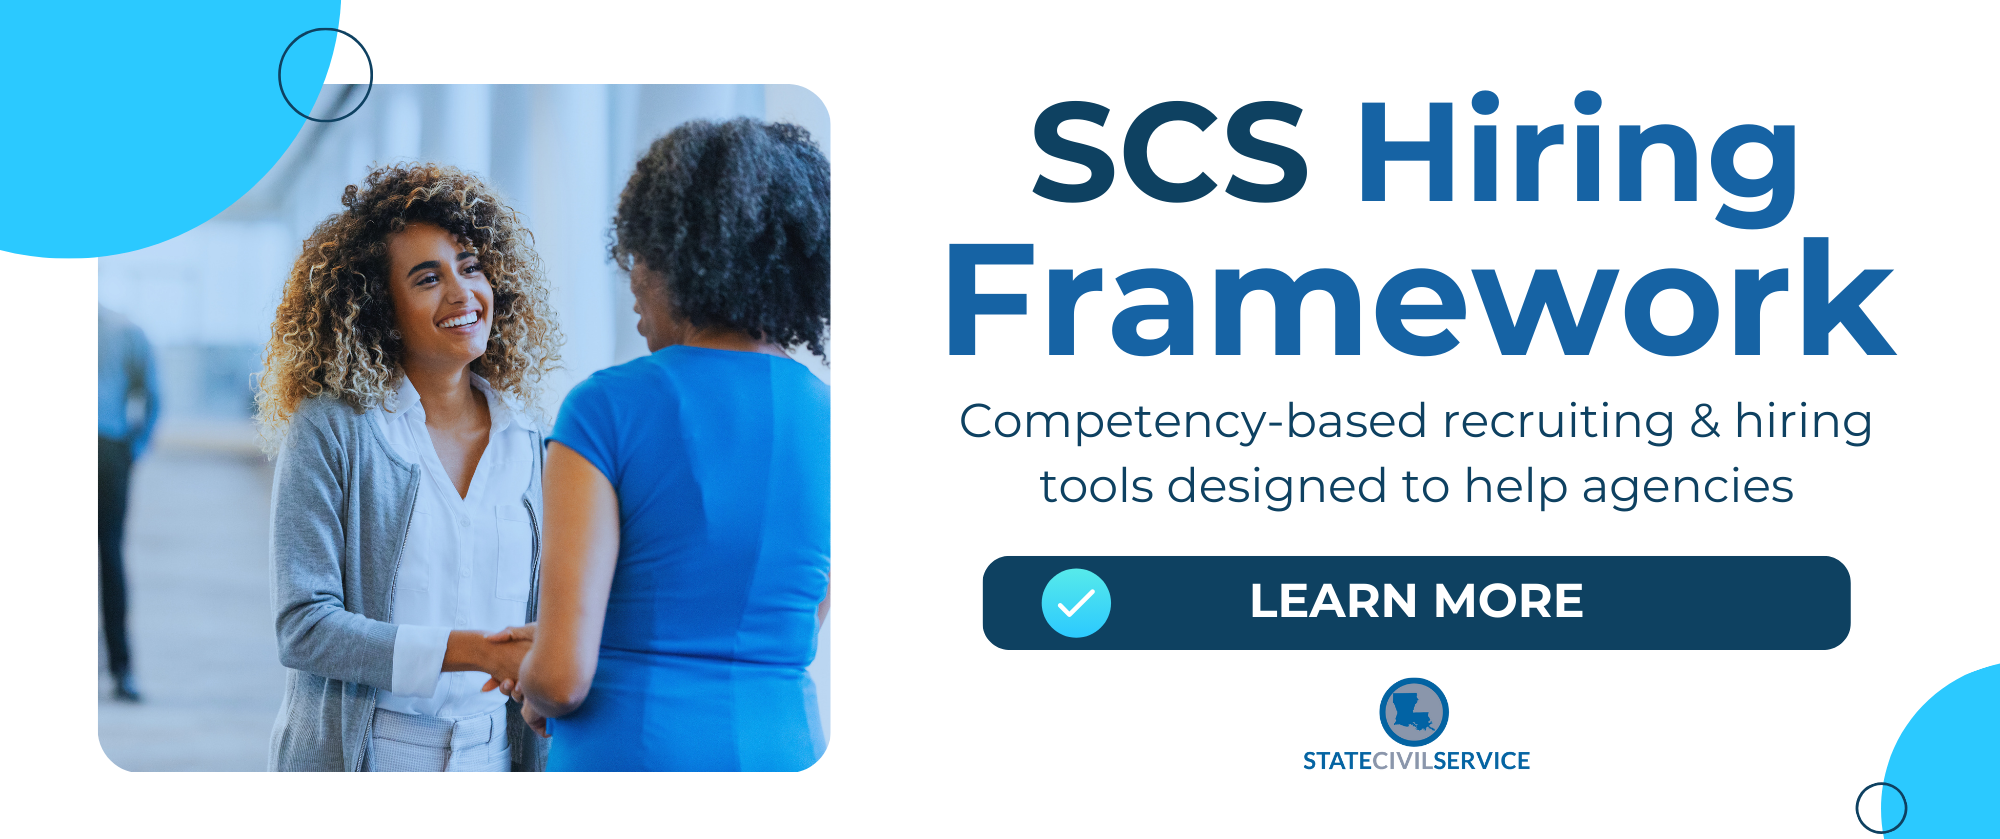 SCS Hiring Framework